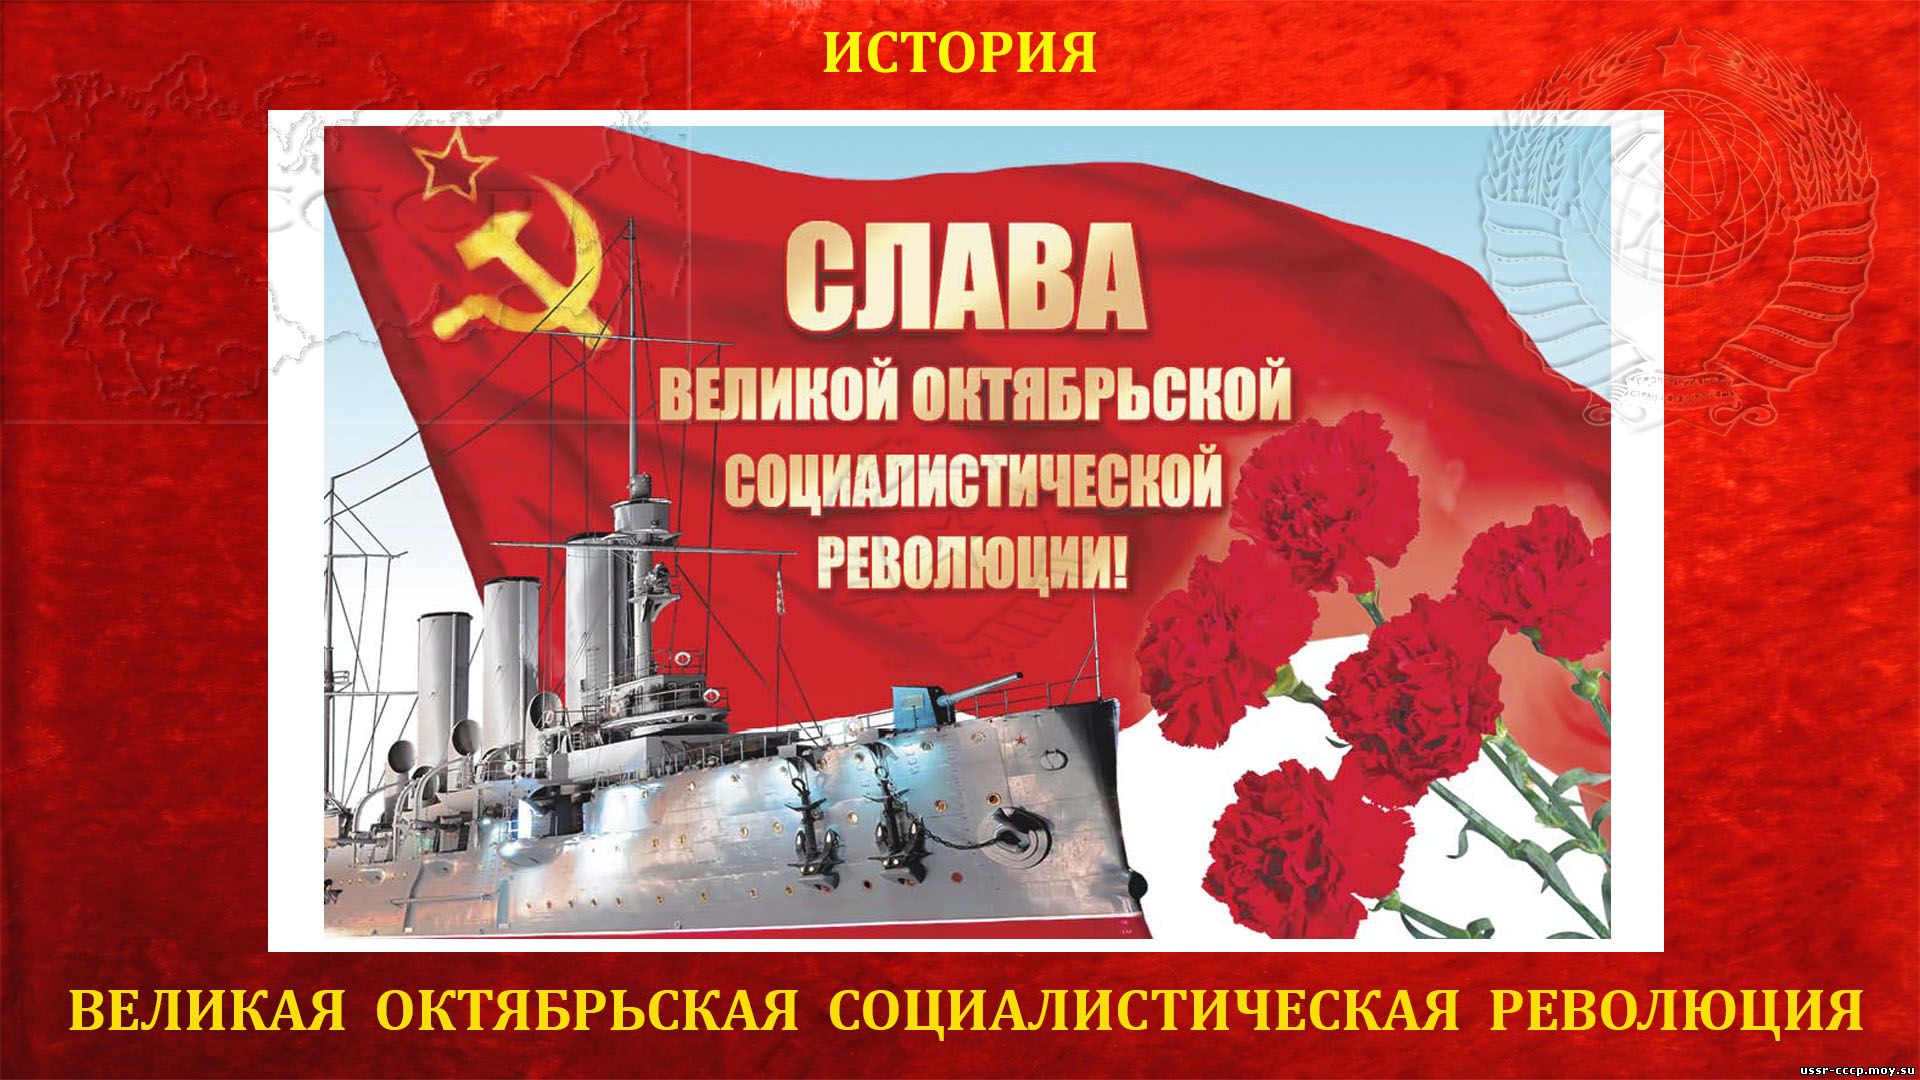 Великая Октябрьская Социалистическая Революция - 1917 года (повествование)